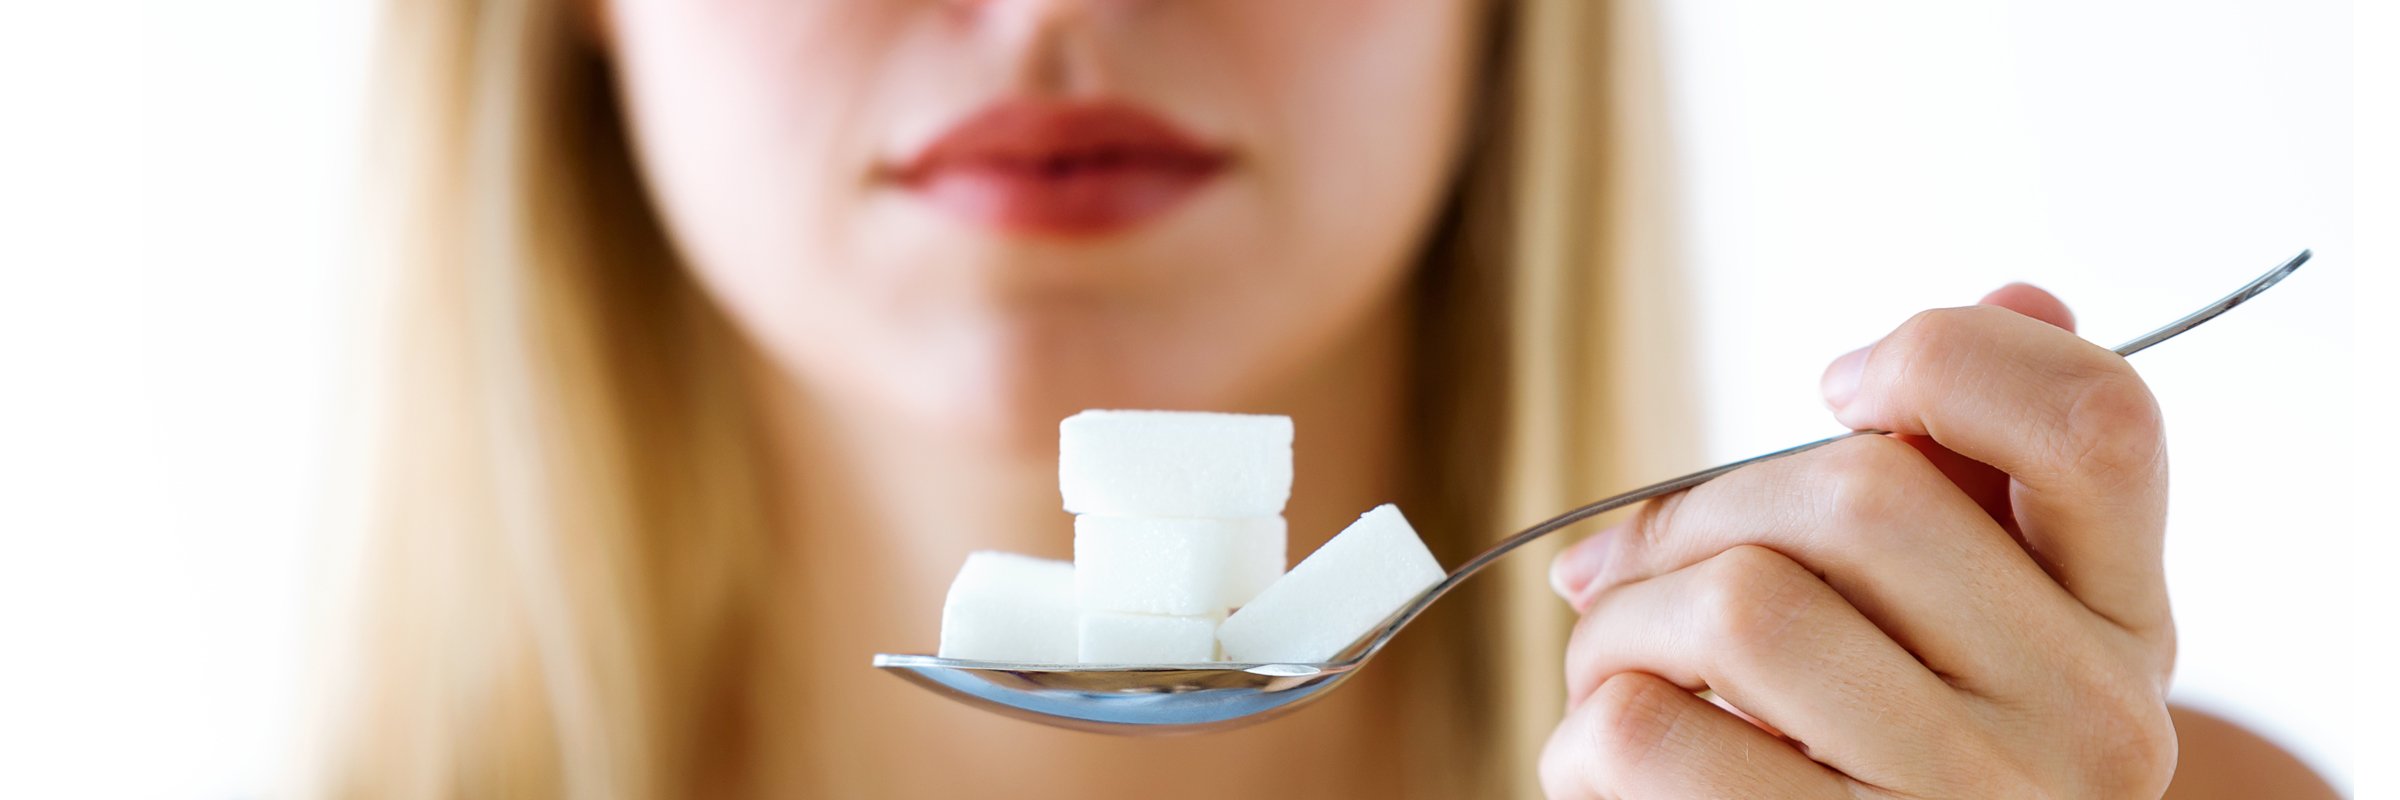 Comment une consommation élevée de sucre favorise-t-elle le diabète de type 2 ?